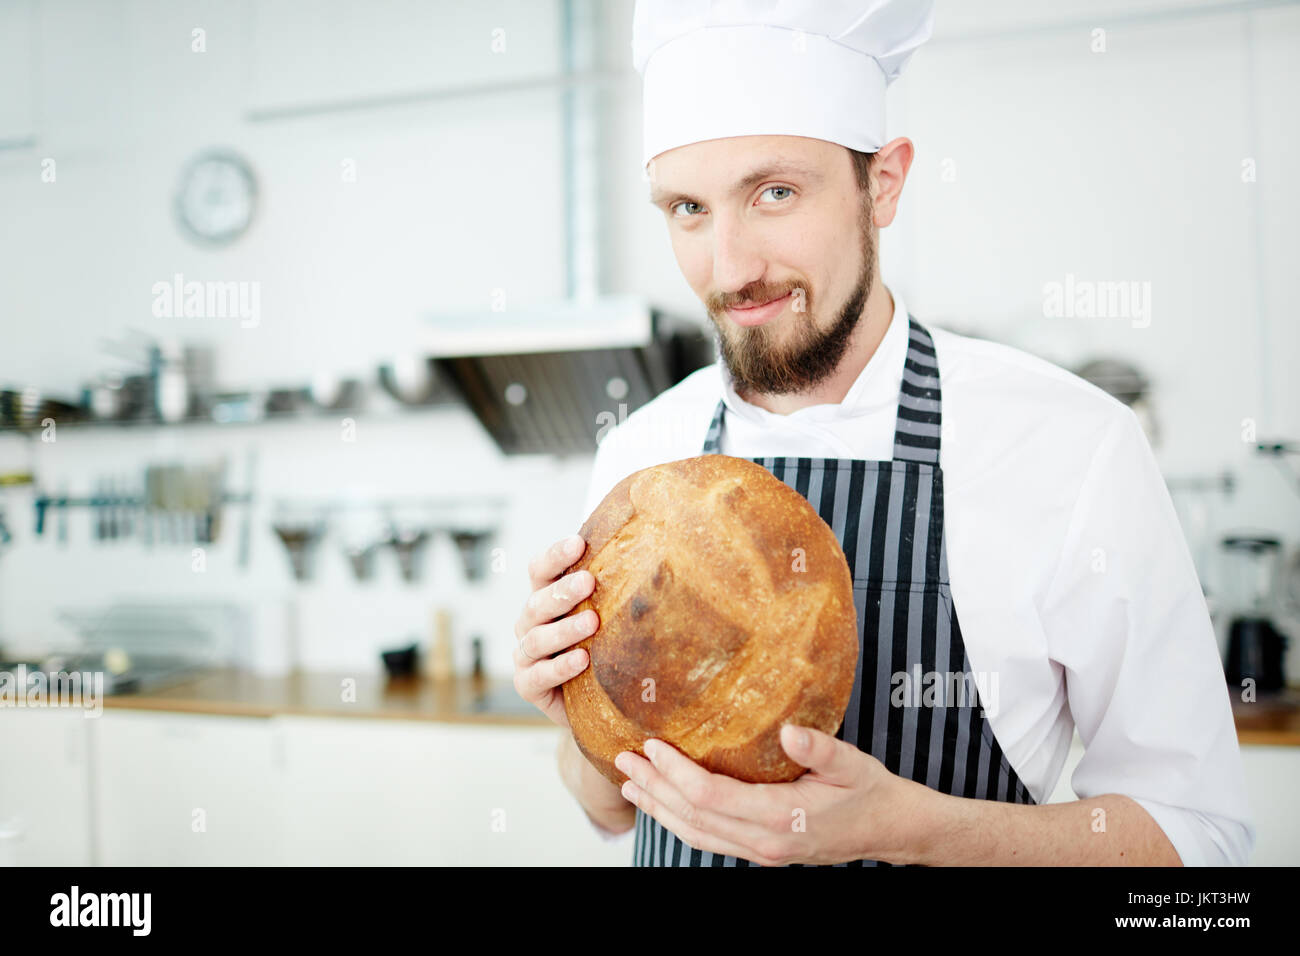 Bäcker in uniform, Holding runden Laib knuspriges Brot Stockfoto